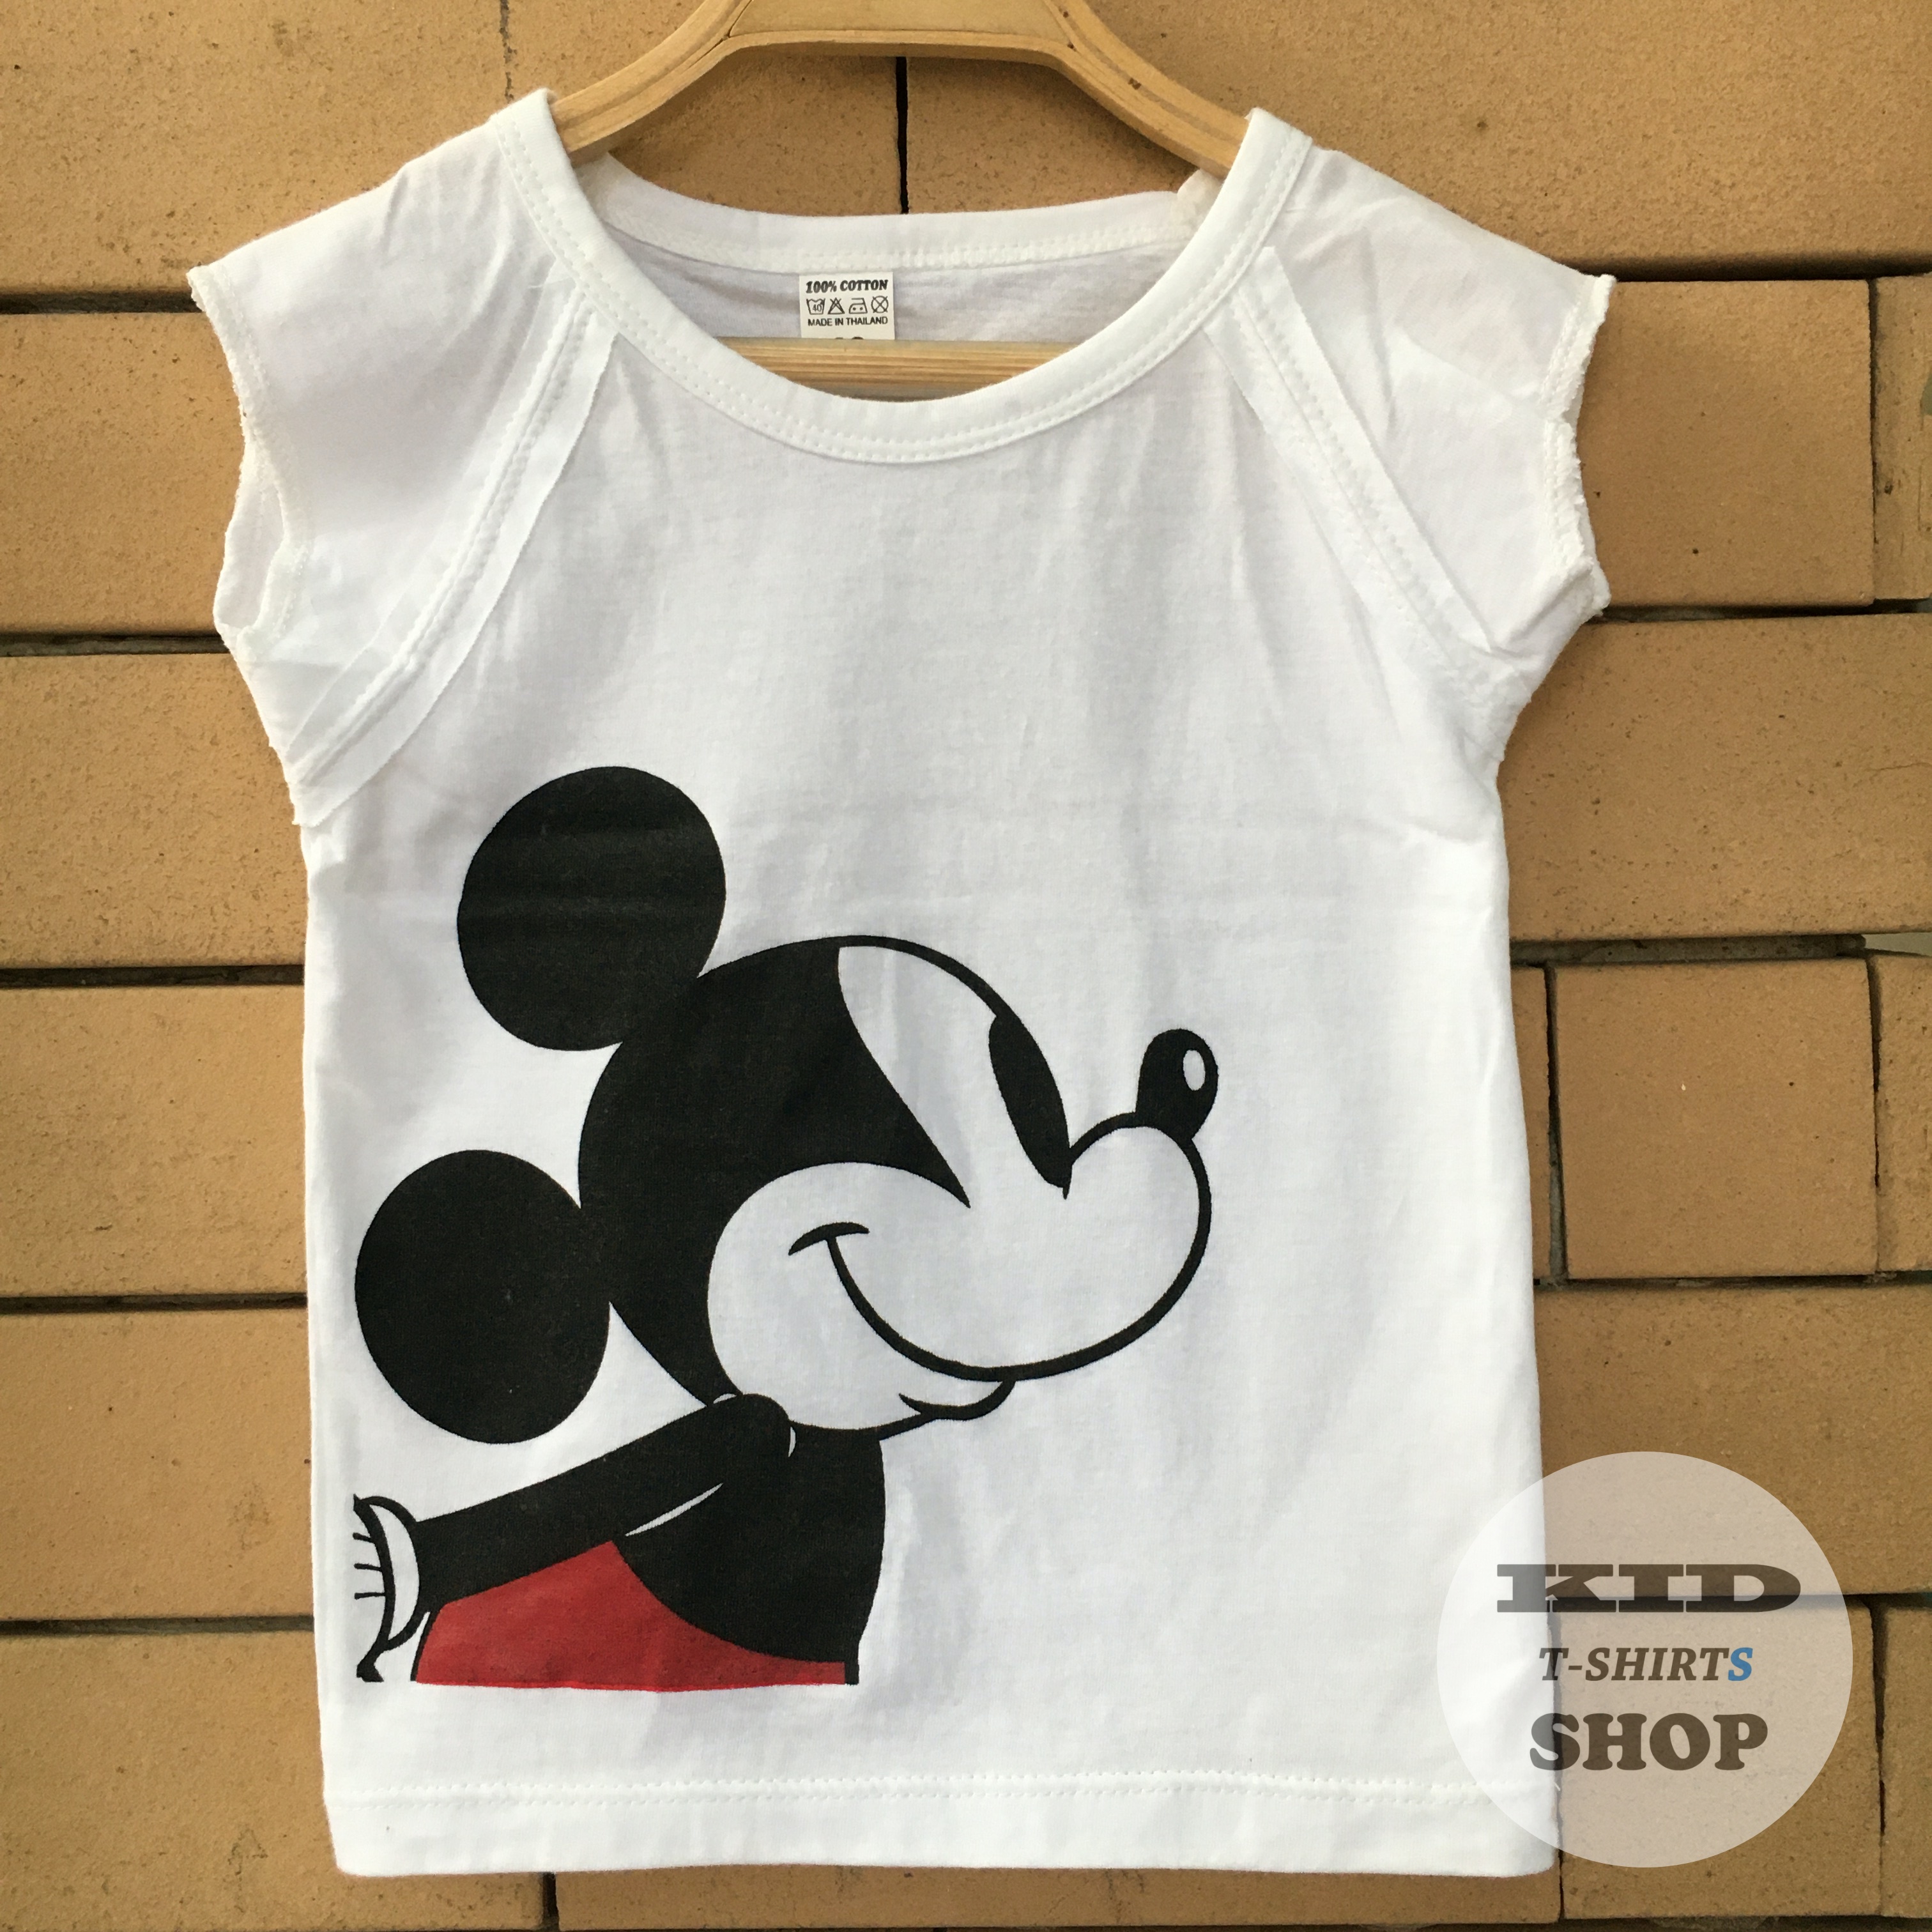 BabyOutlet เสื้อยืดเด็ก ลาย Mickey Mouse เสื้อสีขาว แขนล่ำ มี 4 ไซส์ (SS , S , M , L) มิกกี้เมาส์ แขนกุด มี Size แรกเกิด - 6 ปี ผลิตจากผ้าฝ้าย 100% ชุดเด็ก